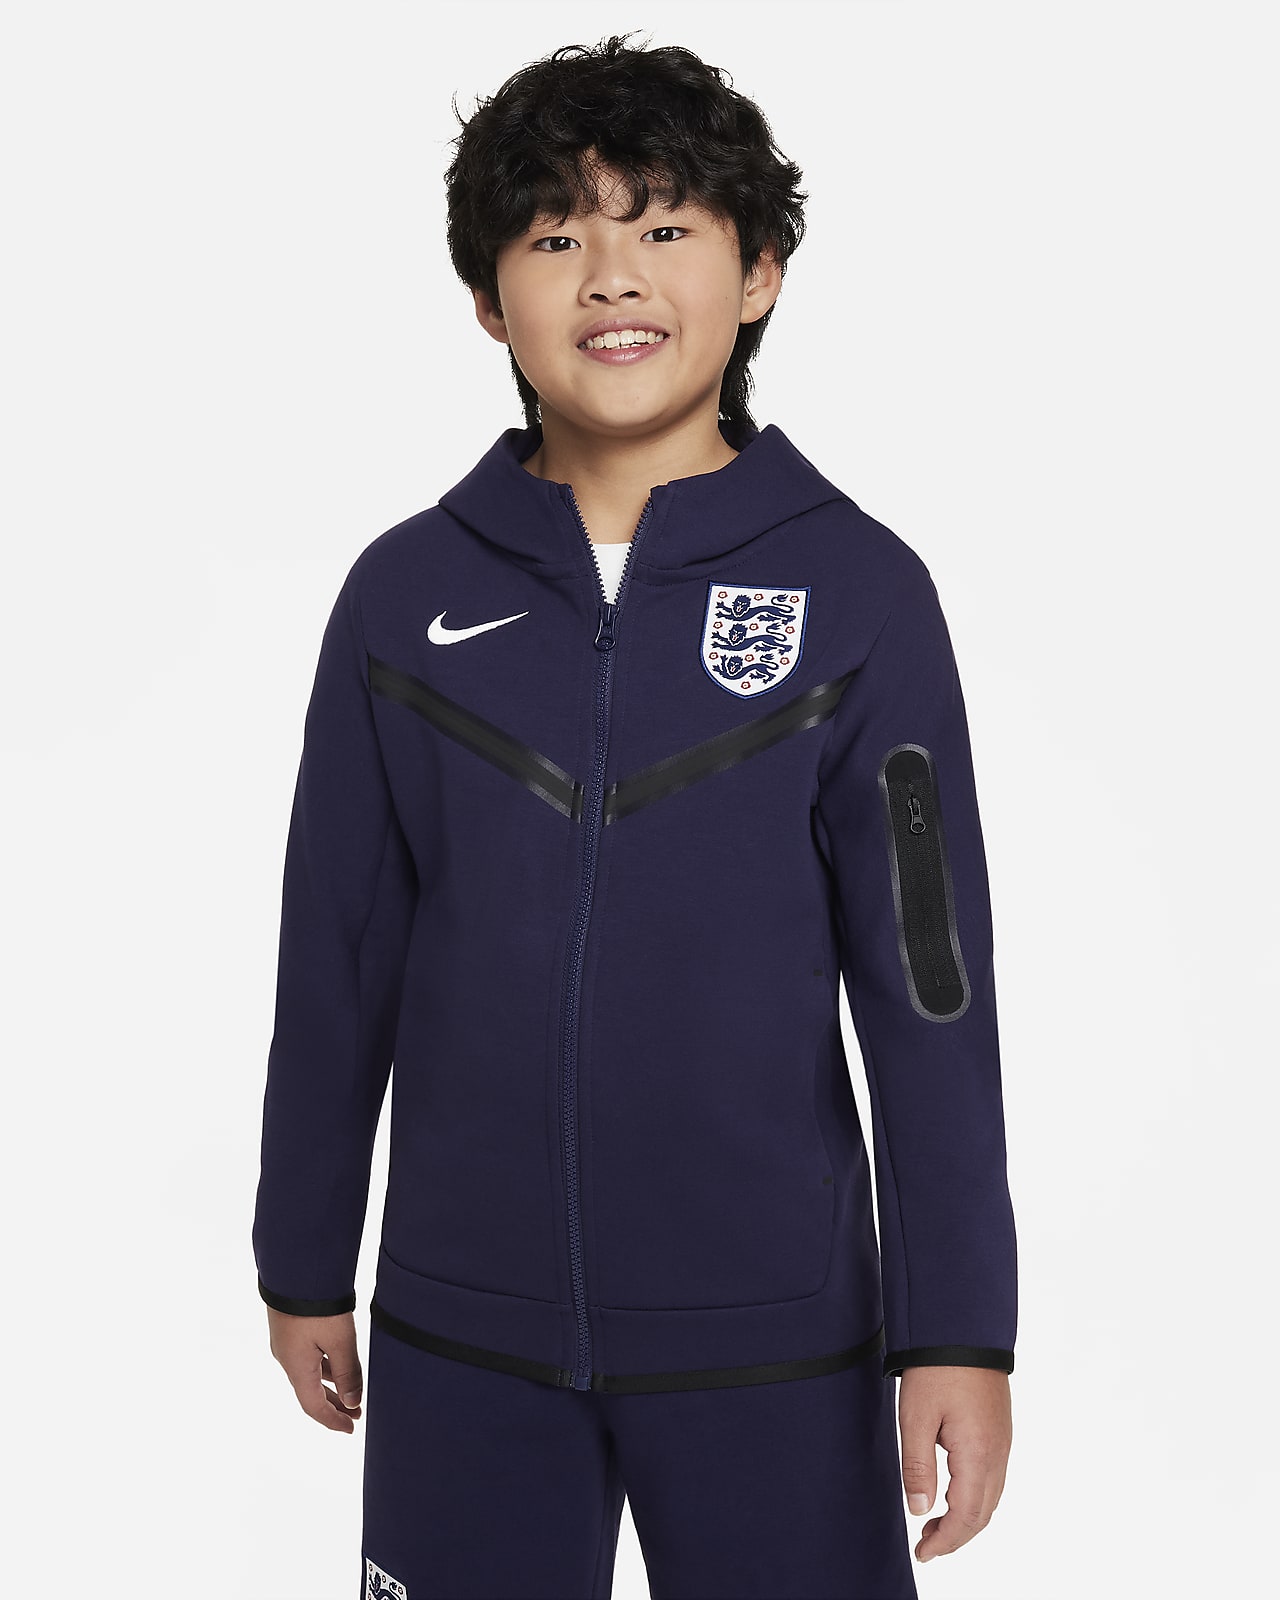 Inglaterra Tech Fleece Sudadera con capucha de fútbol con cremallera completa Nike - Niño